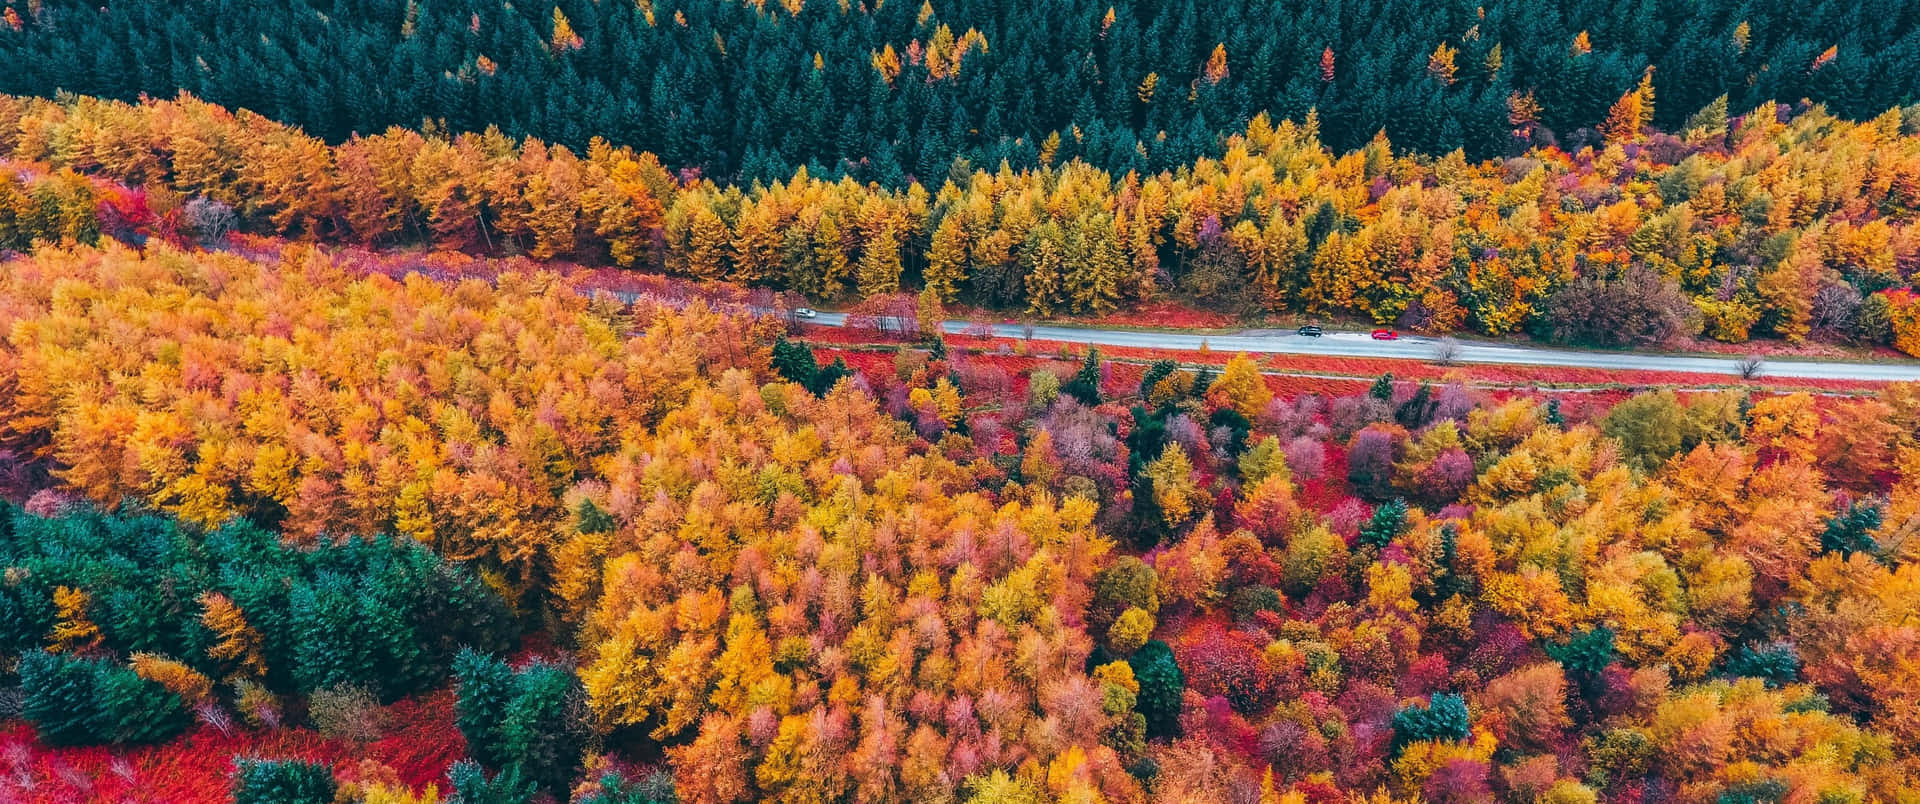 Nyd et naturskønt udsyn af efterårets blade ude på landskabet. Wallpaper